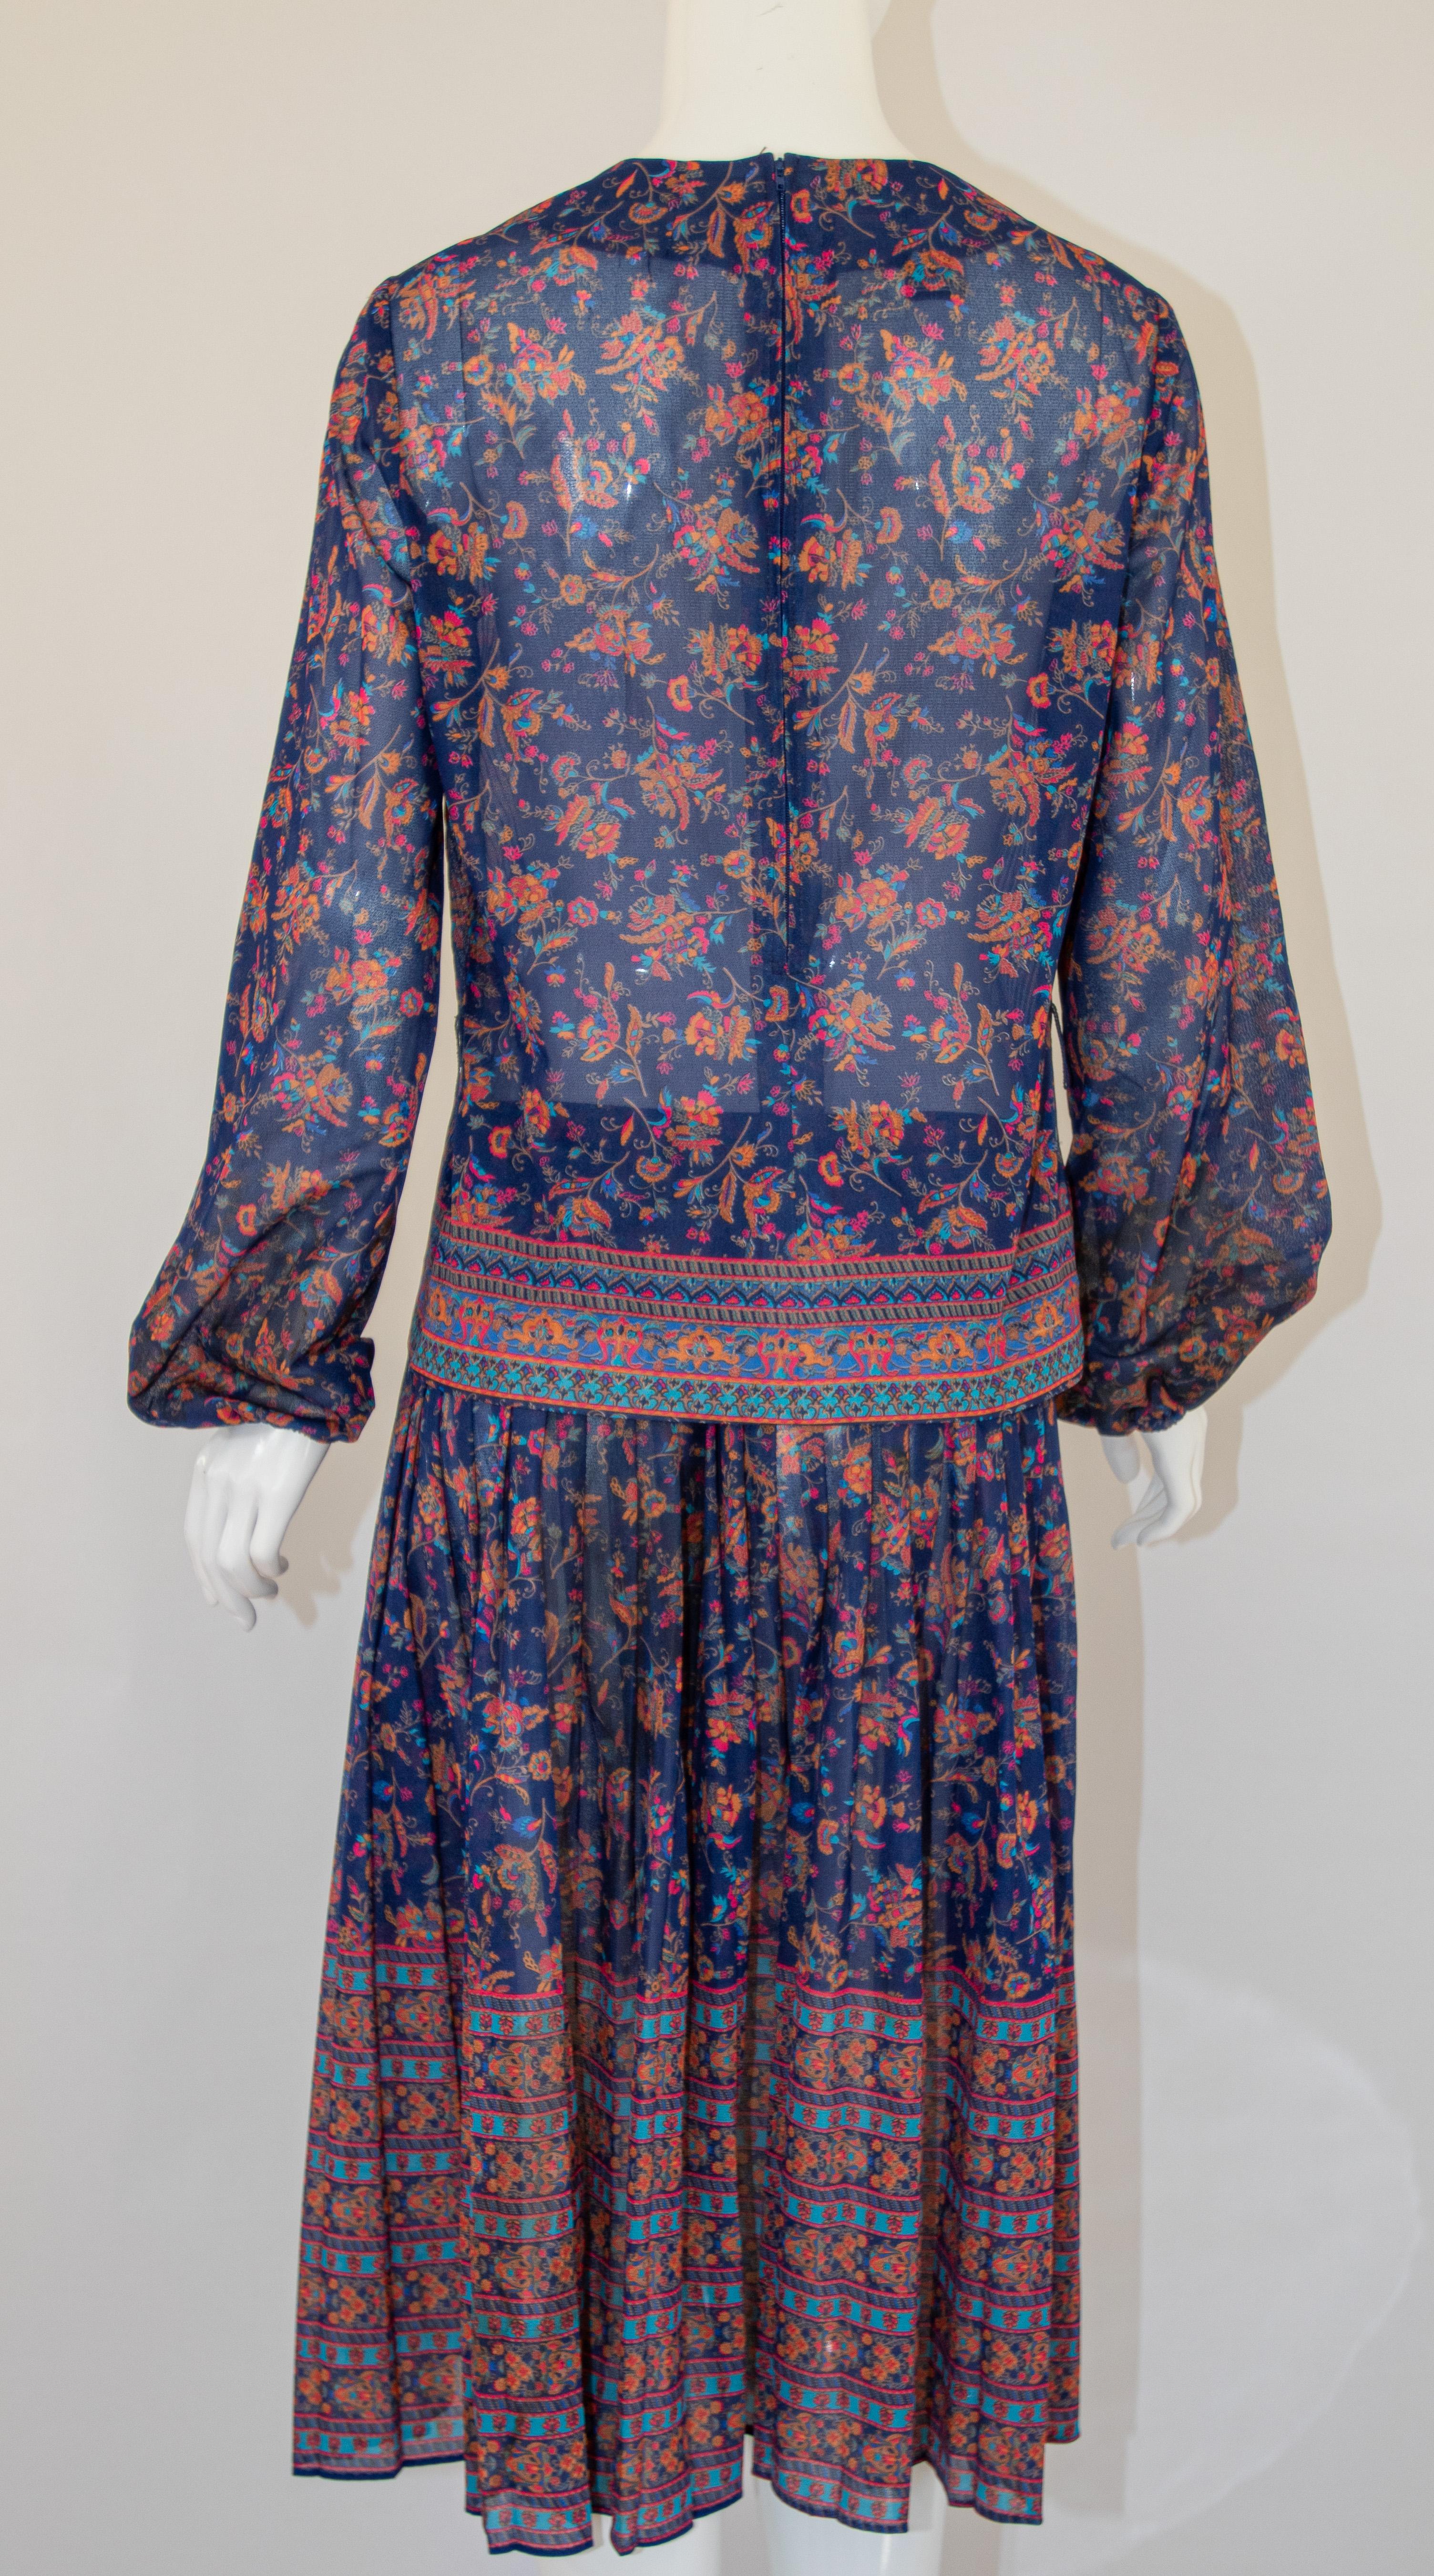 1970s Vintage Bohemian Floral Printed Dress Miss Magnin at I. Magnin For Sale 6